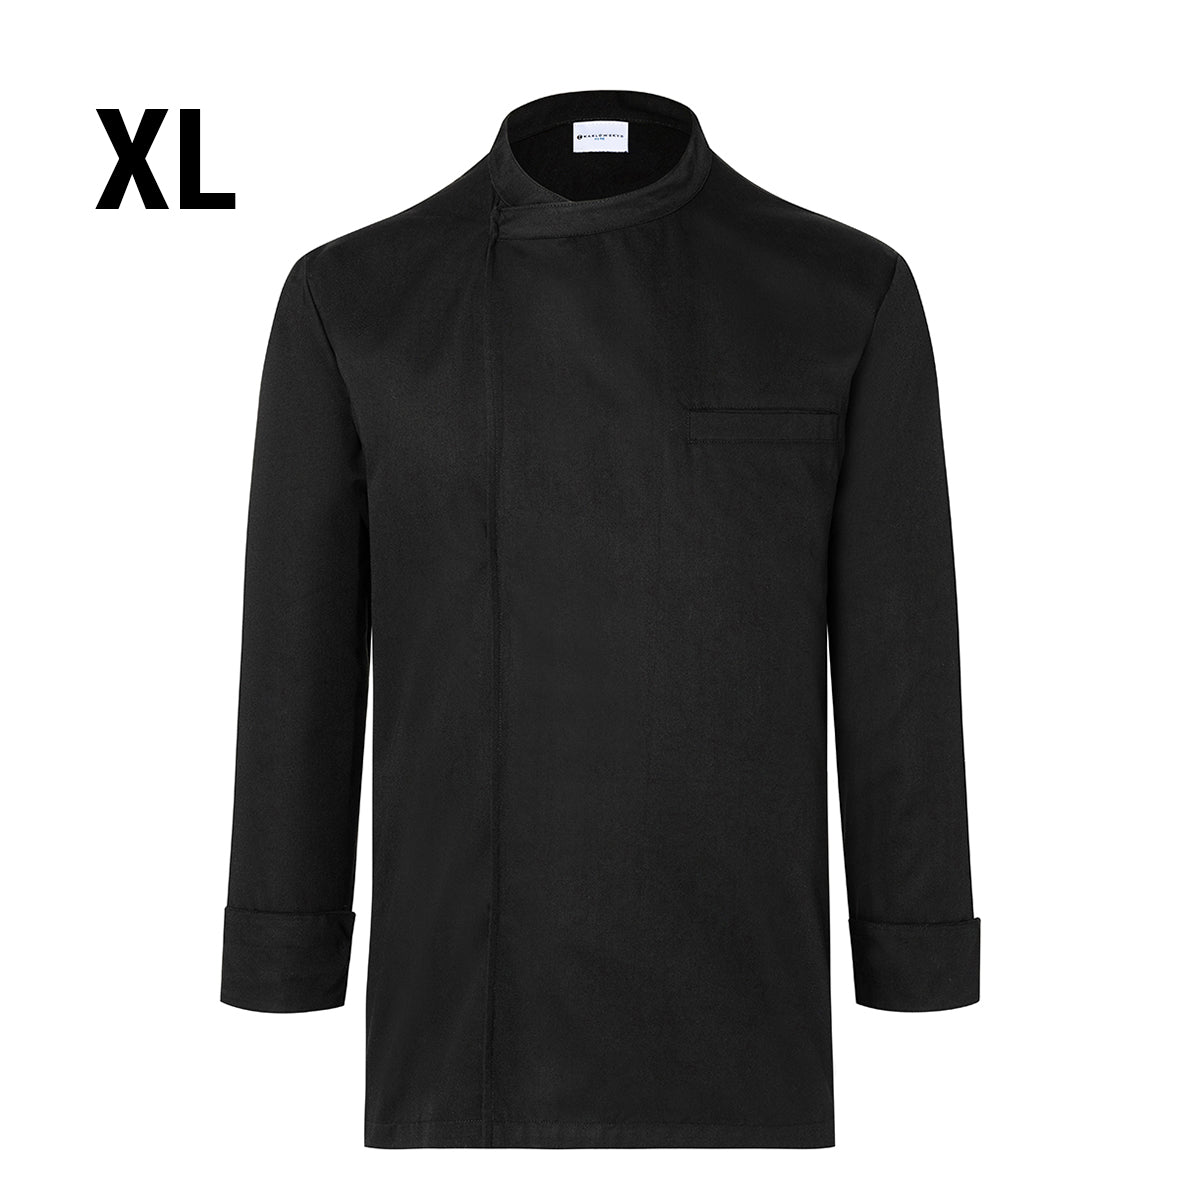 (6 stk) Karlowsky langermet skjorte - svart - str. XL